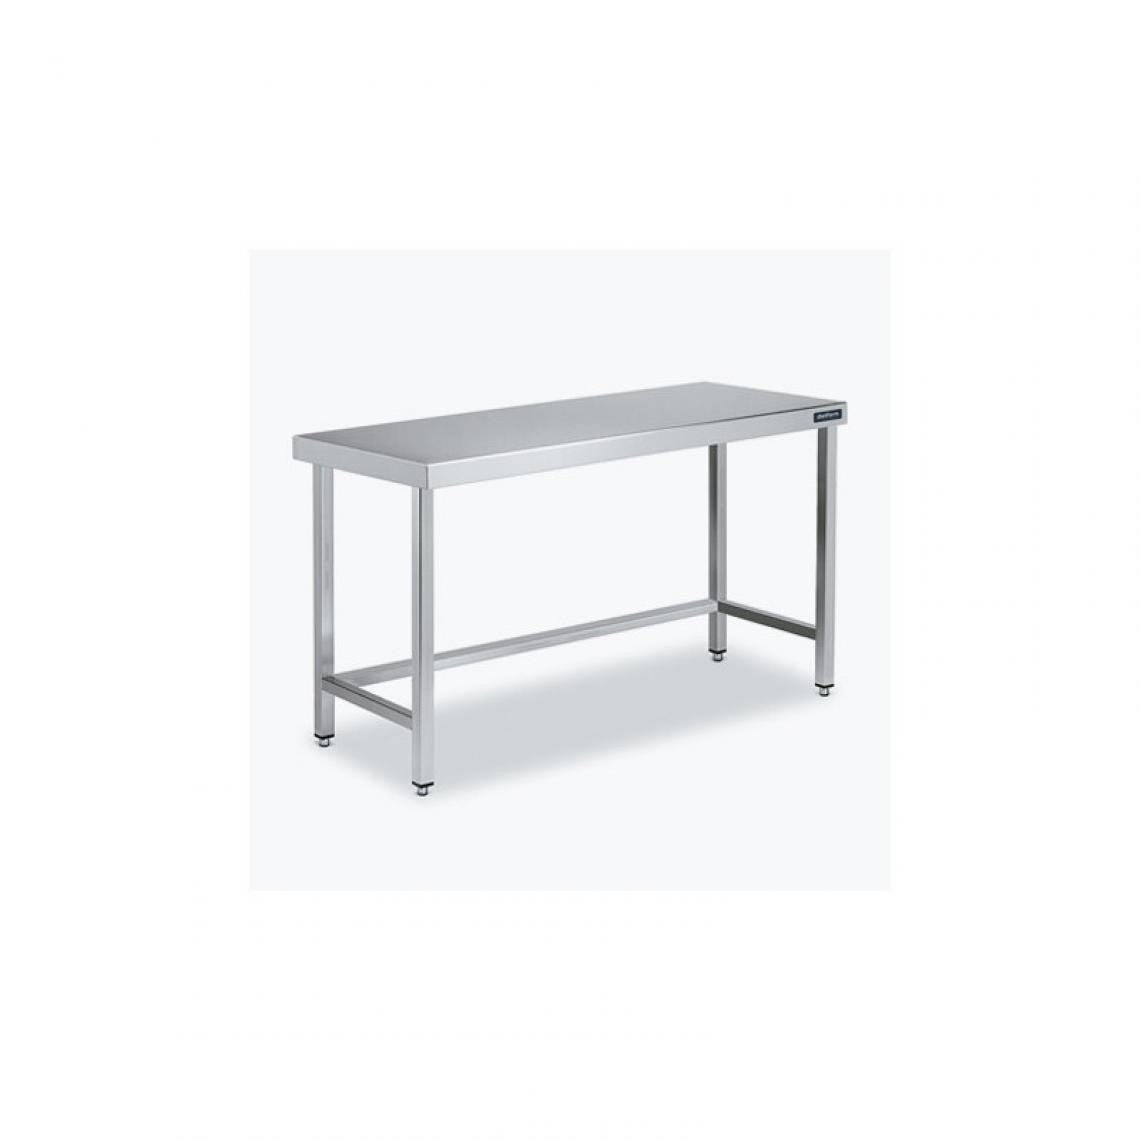 DISTFORM - Table Centrale 600x500 avec Renforts - Distform - Inox 18/10600x500x850mm - Tables à manger